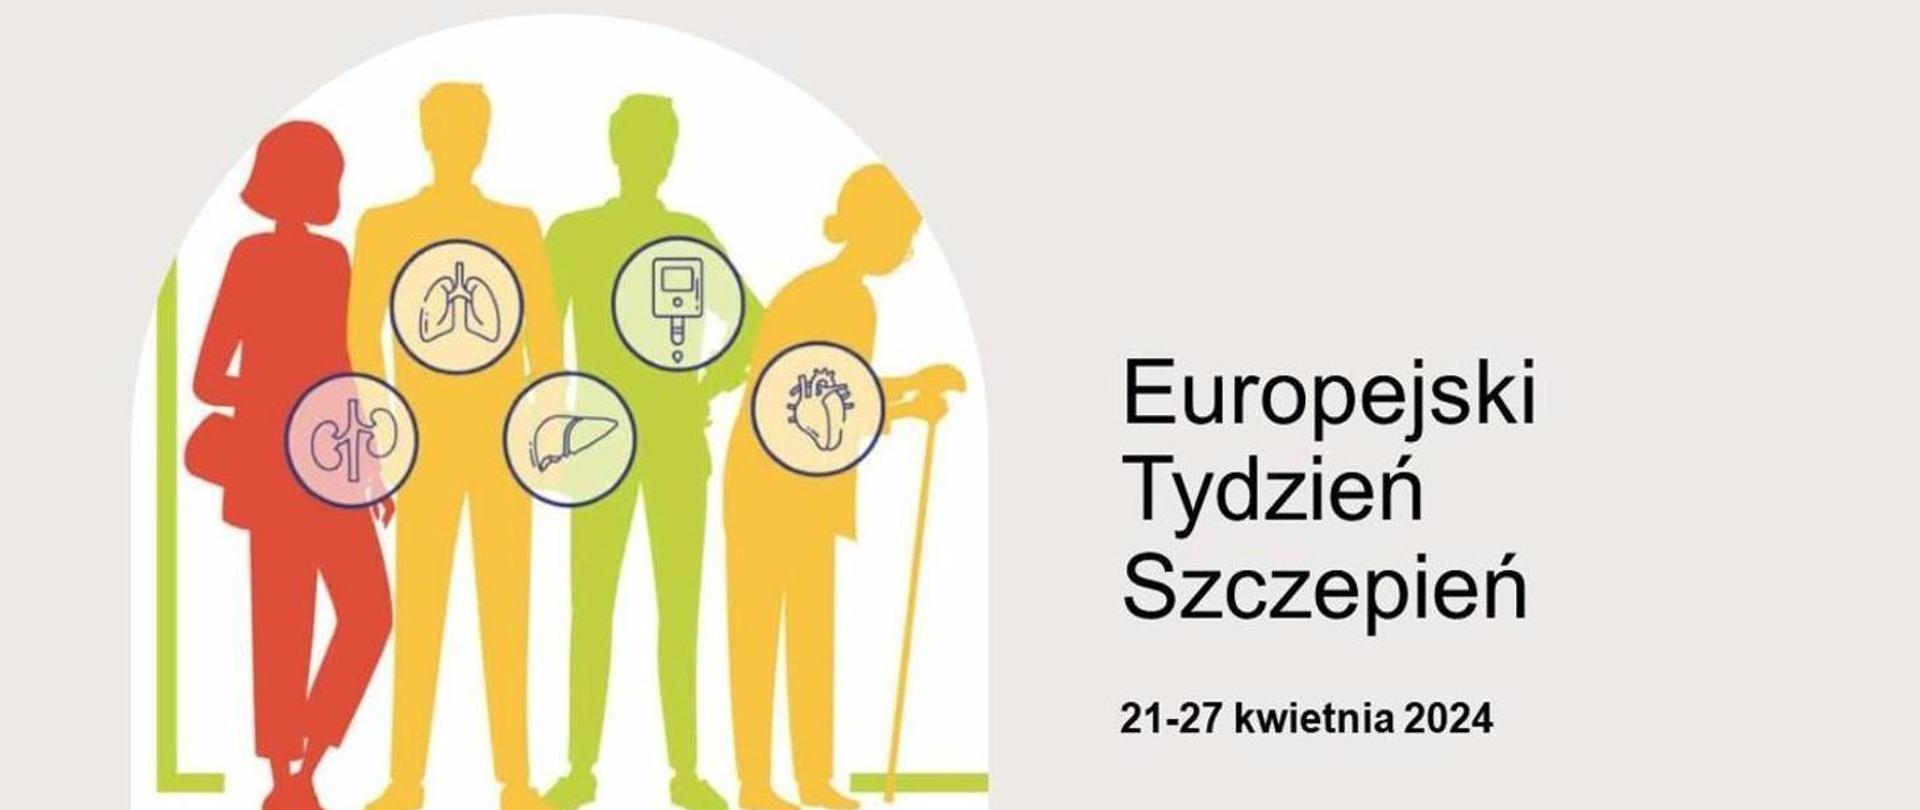 Europejski Tydzień Szczepień 2024.